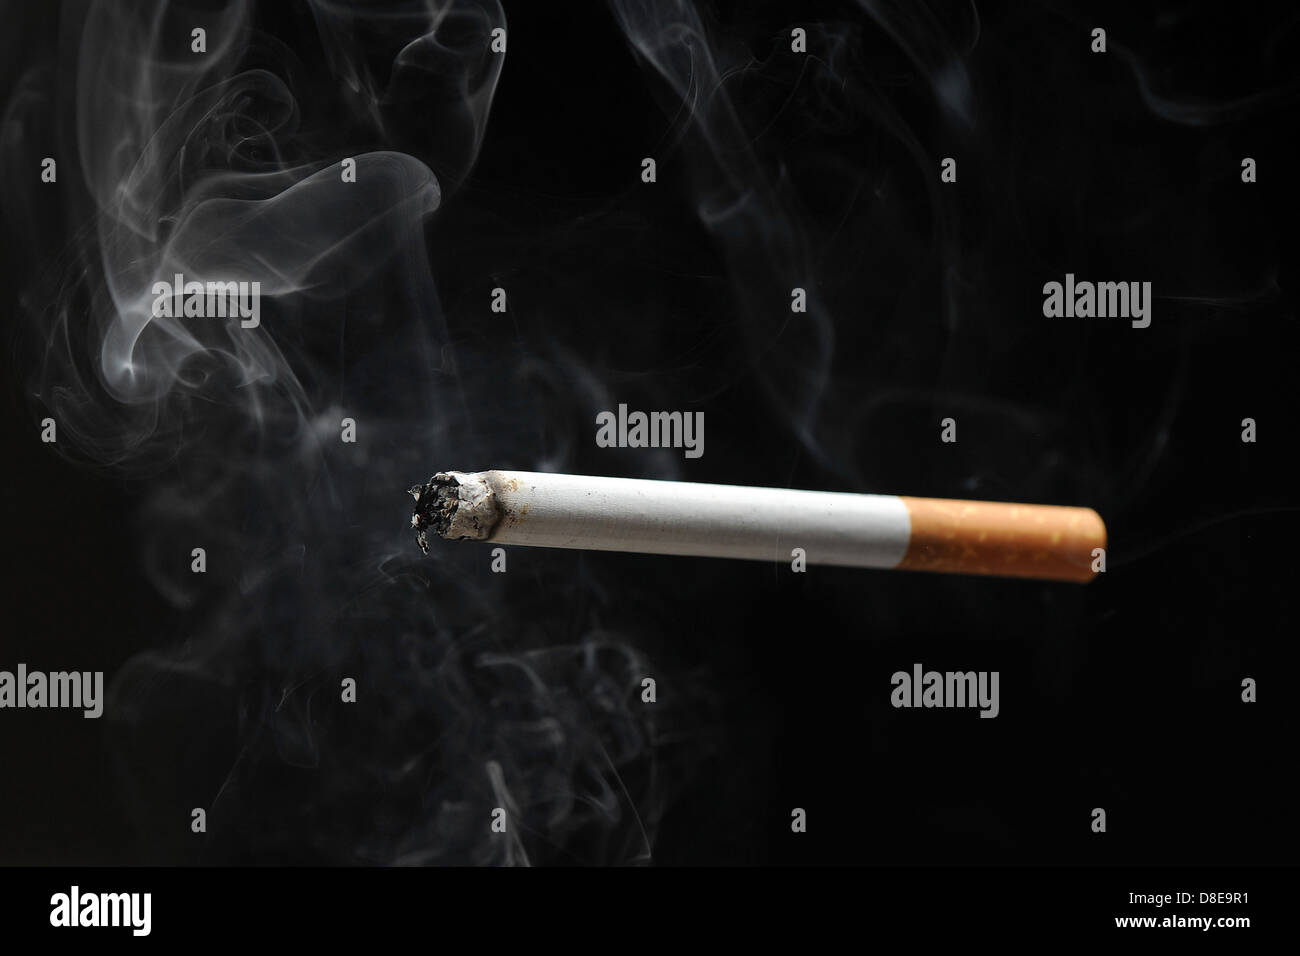 Eine brennende Zigarette Rauch vor einem schwarzen Hintergrund. Stockfoto